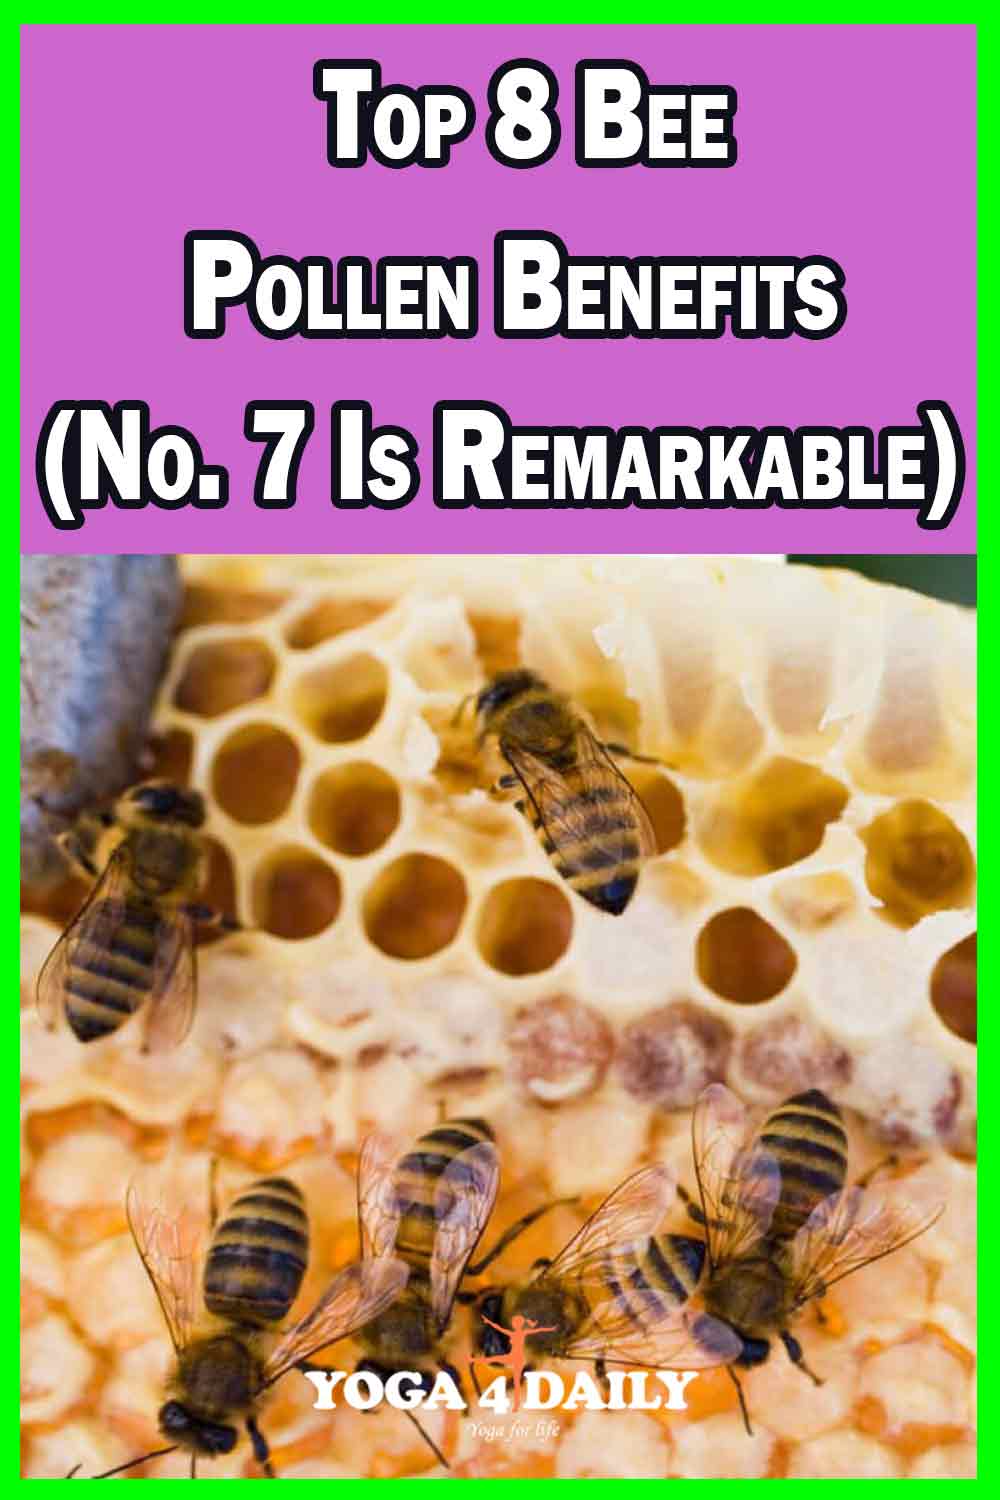 Top 8 Bee Pollen Benefits (No. 7 Is Remarkable)